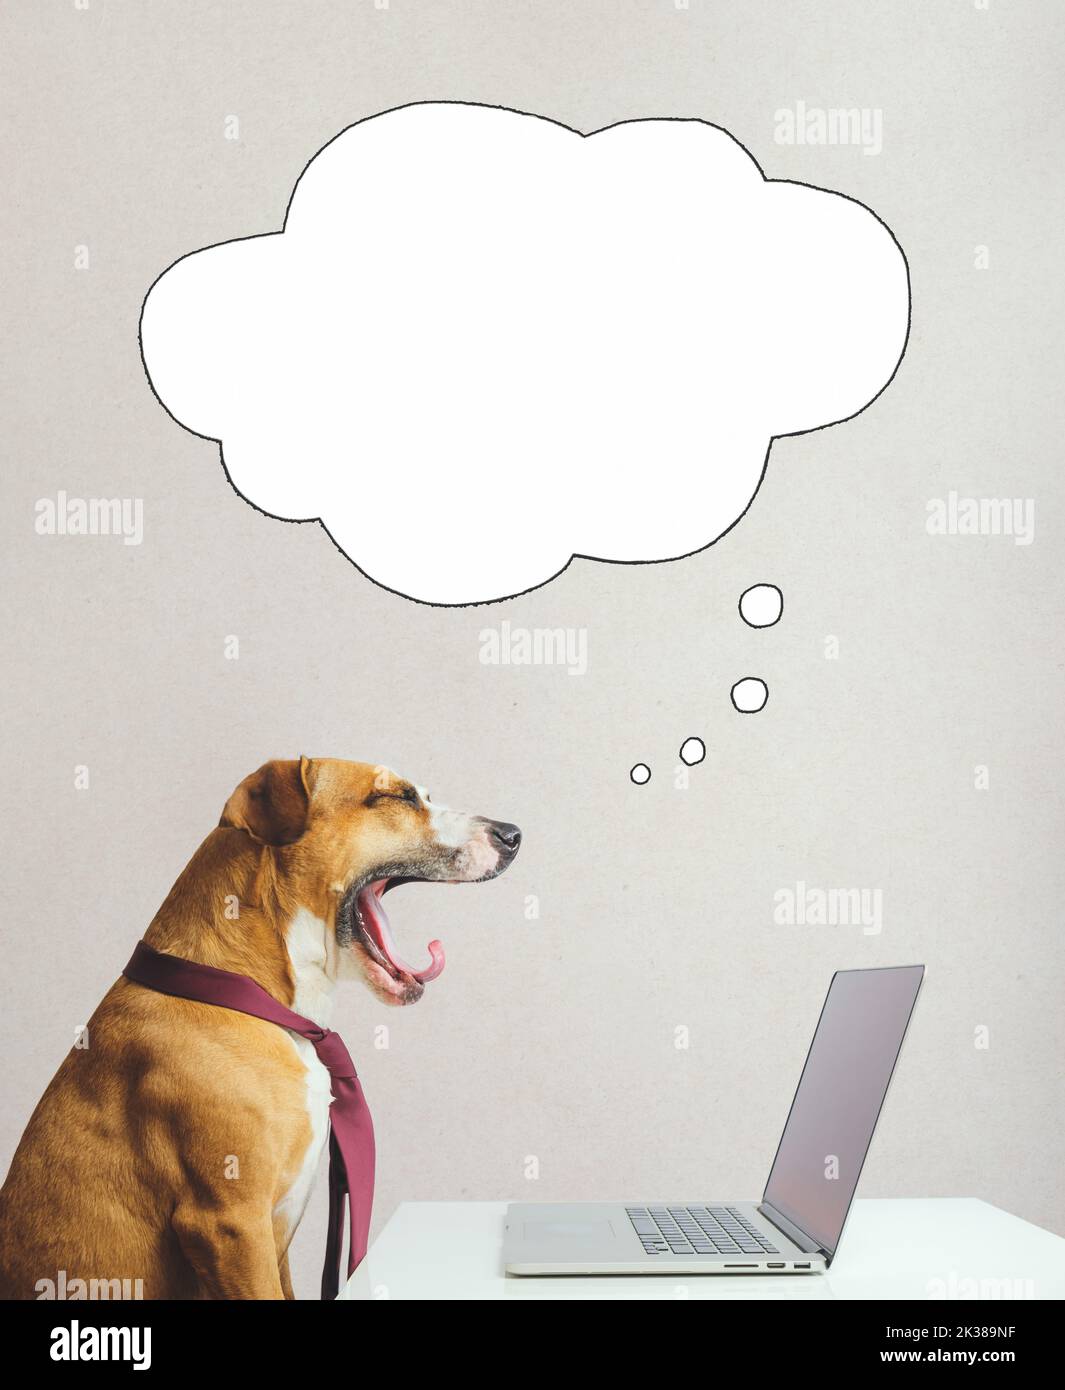 Gähnender Hund beim Träumen, in einer Krawatte vor einem Computer gähnend und träumend oder denkend, Sprechblase. Digitale Collage: Am Arbeitsplatz, ohne Ene Stockfoto